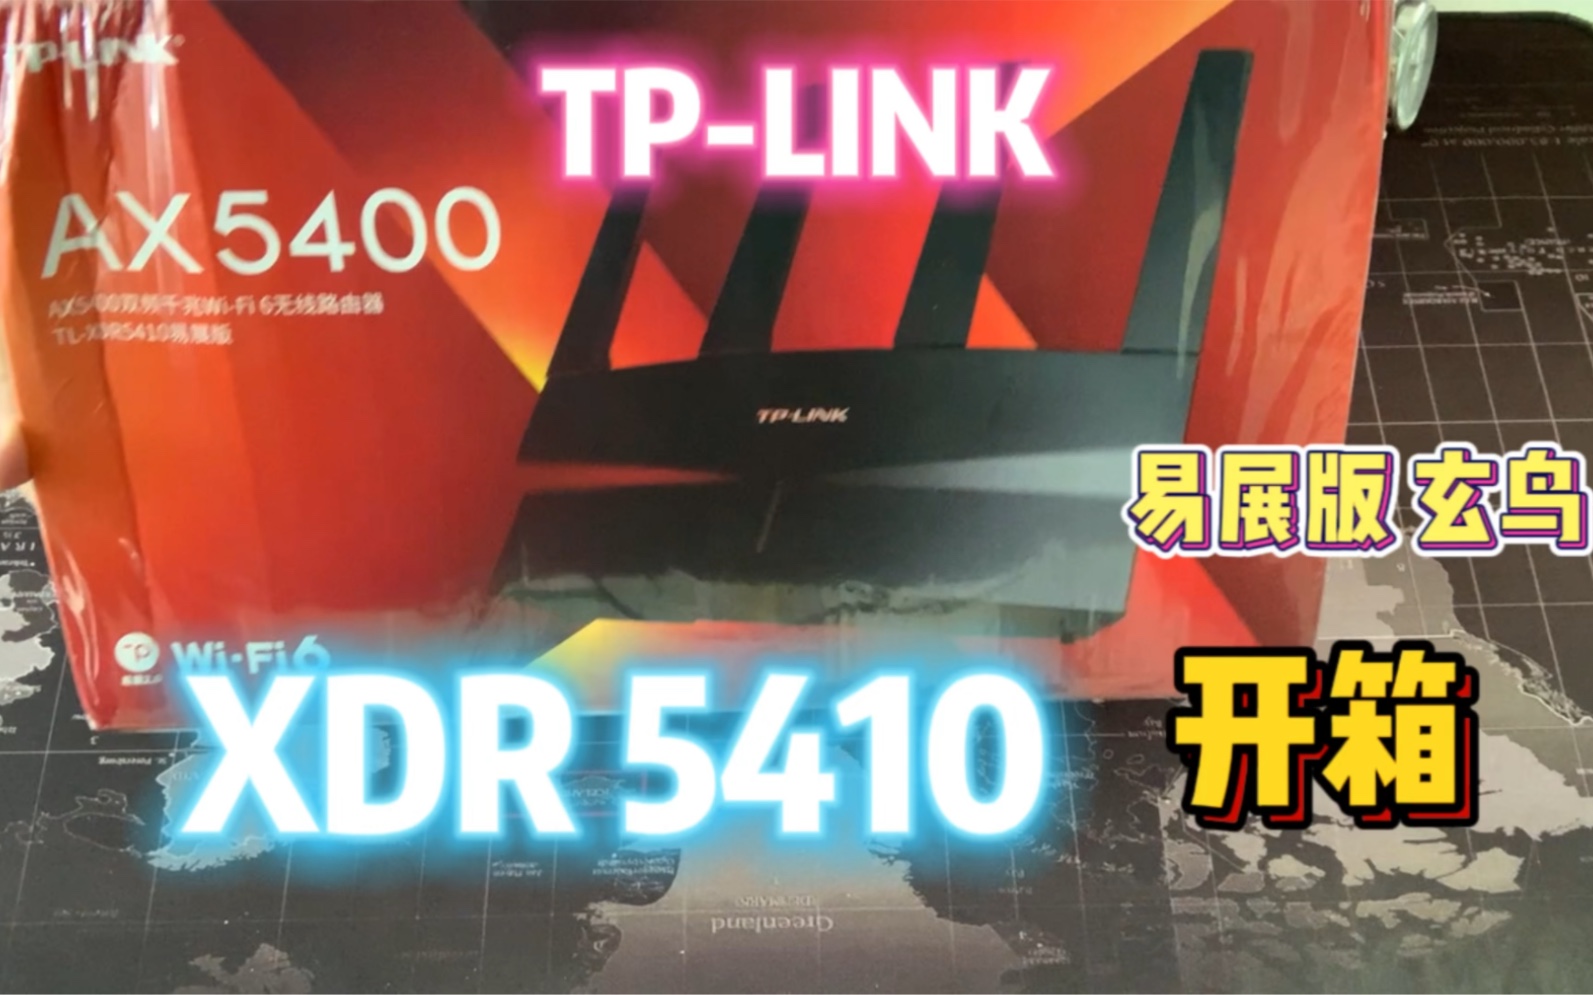 TP-LINK AX5400 XDR5410易展版·玄鸟 WIFI6路由器 开箱